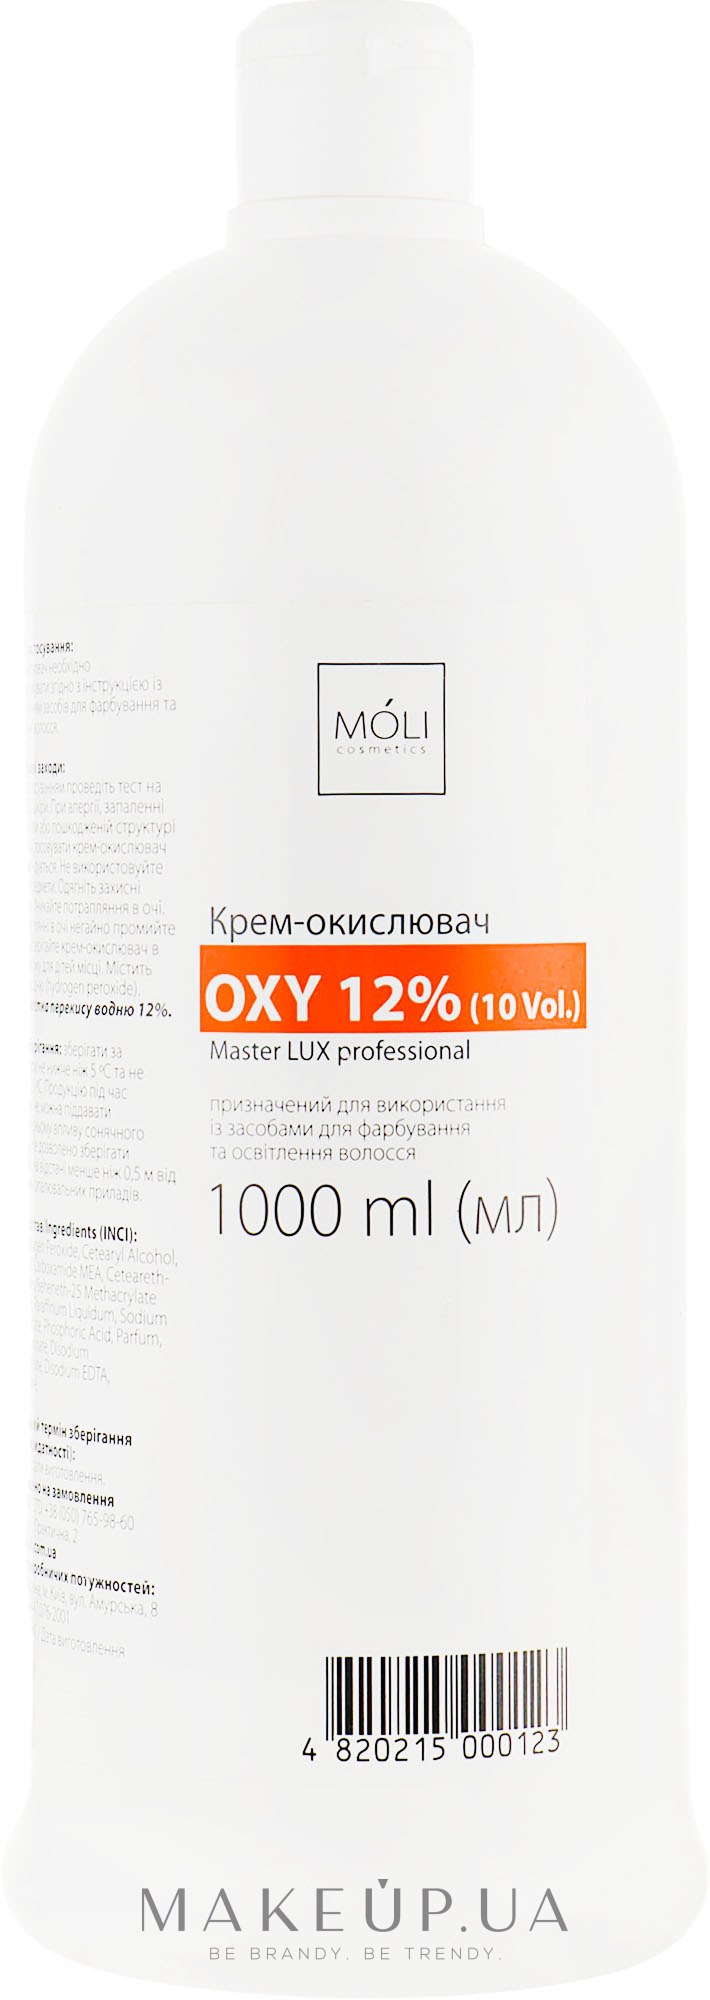 Окислительная эмульсия 12% - Moli Cosmetics Oxy 12% (10 Vol.) — фото 1000ml